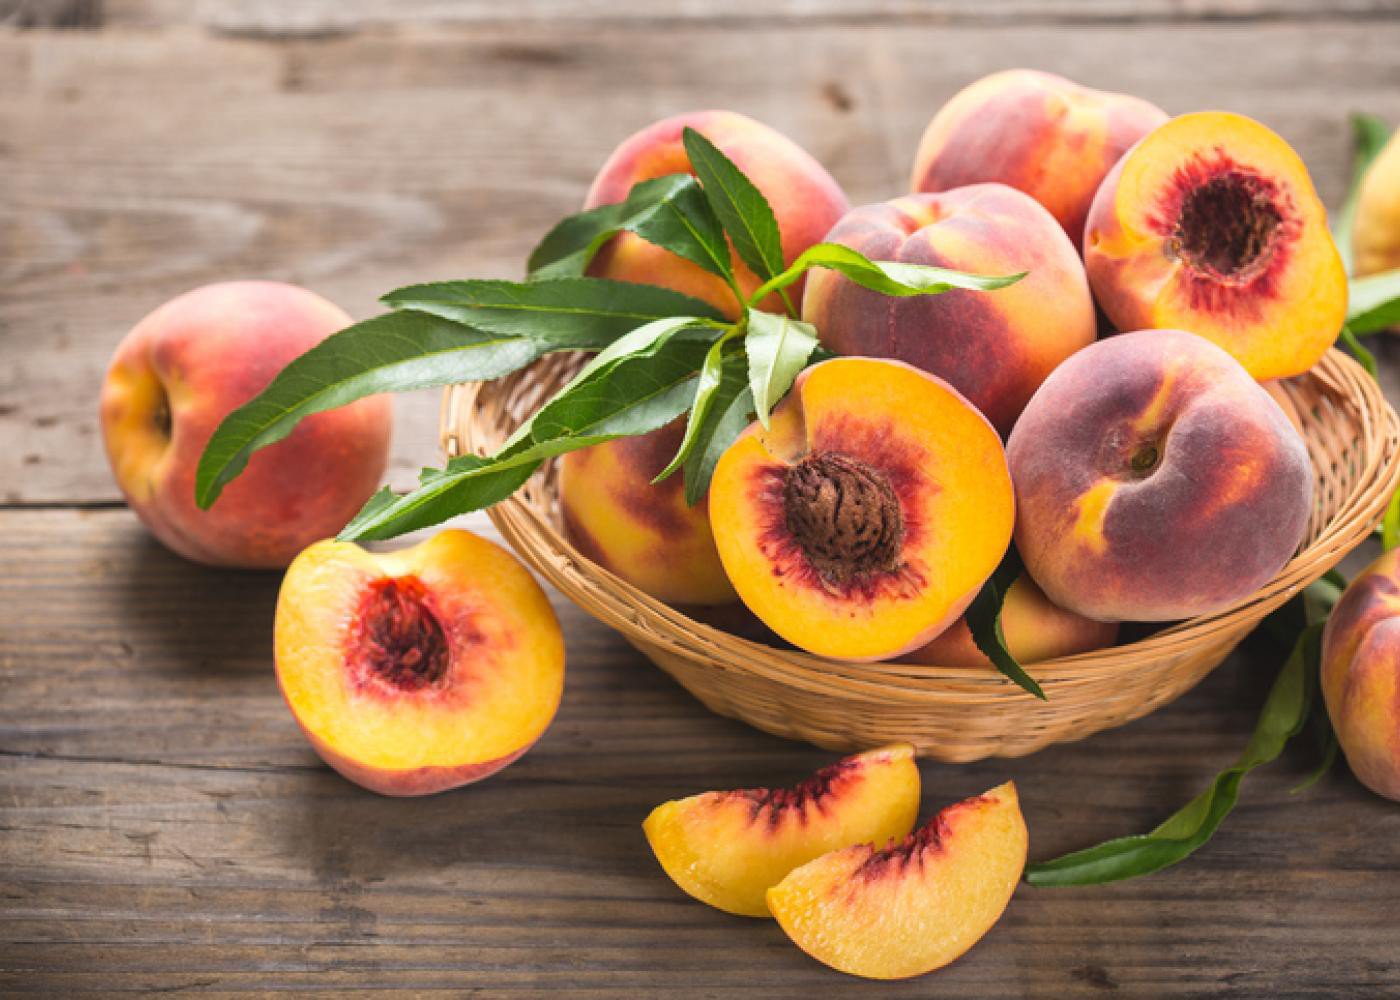 10 loại trái cây ngon miệng đẹp mắt nhưng dễ 'ngậm' nhiều hoá chất bảo quản - Ảnh 4